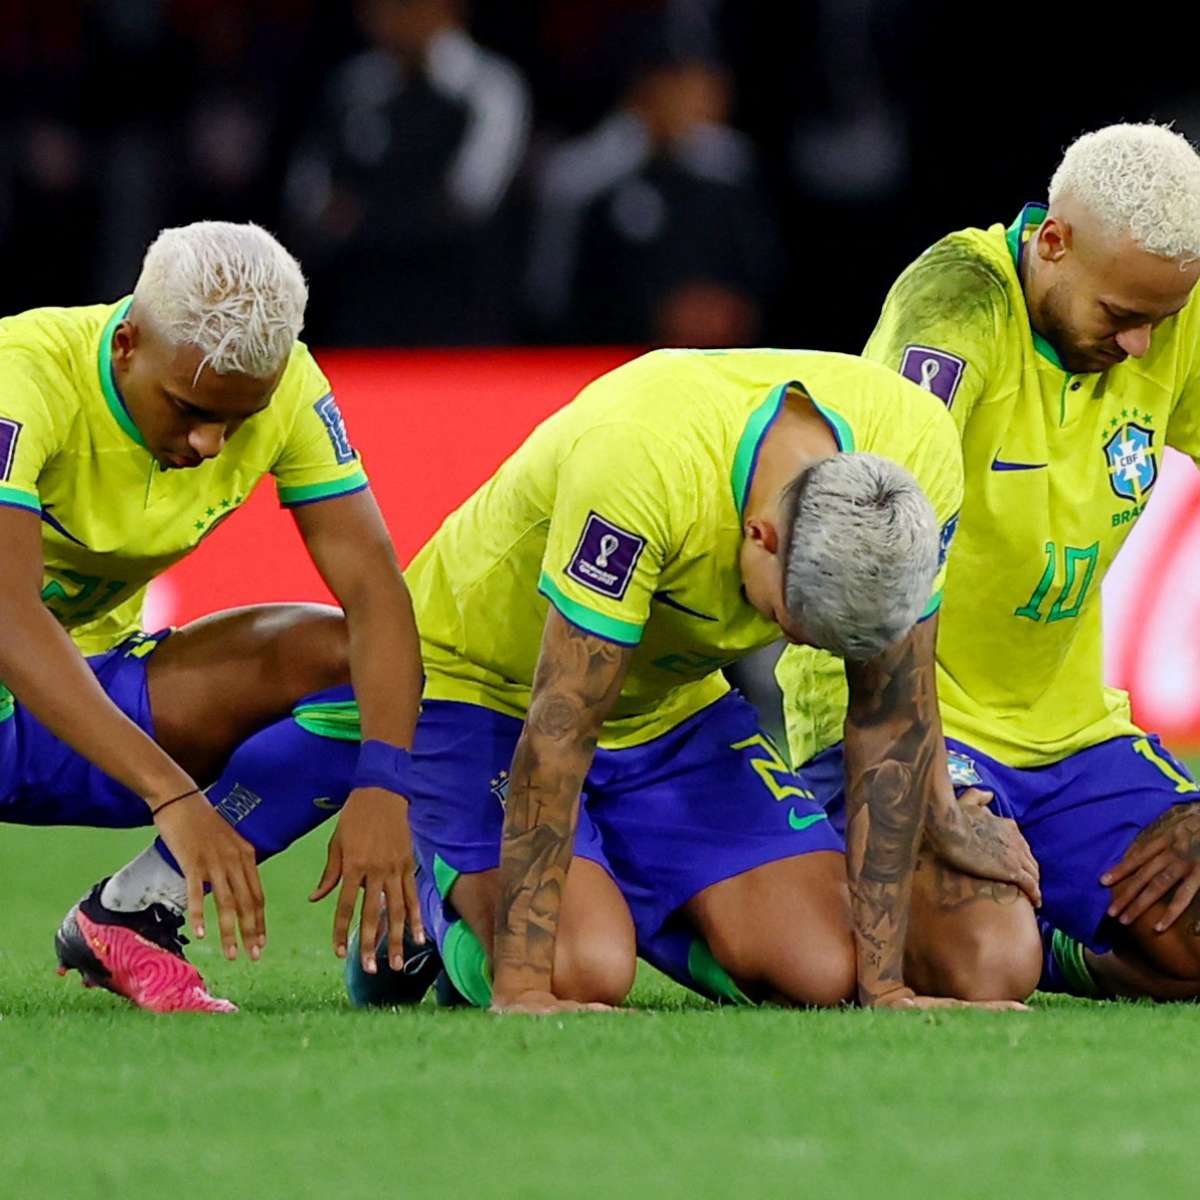 Brasil dá show e elimina Chile da Copa do Mundo 2018